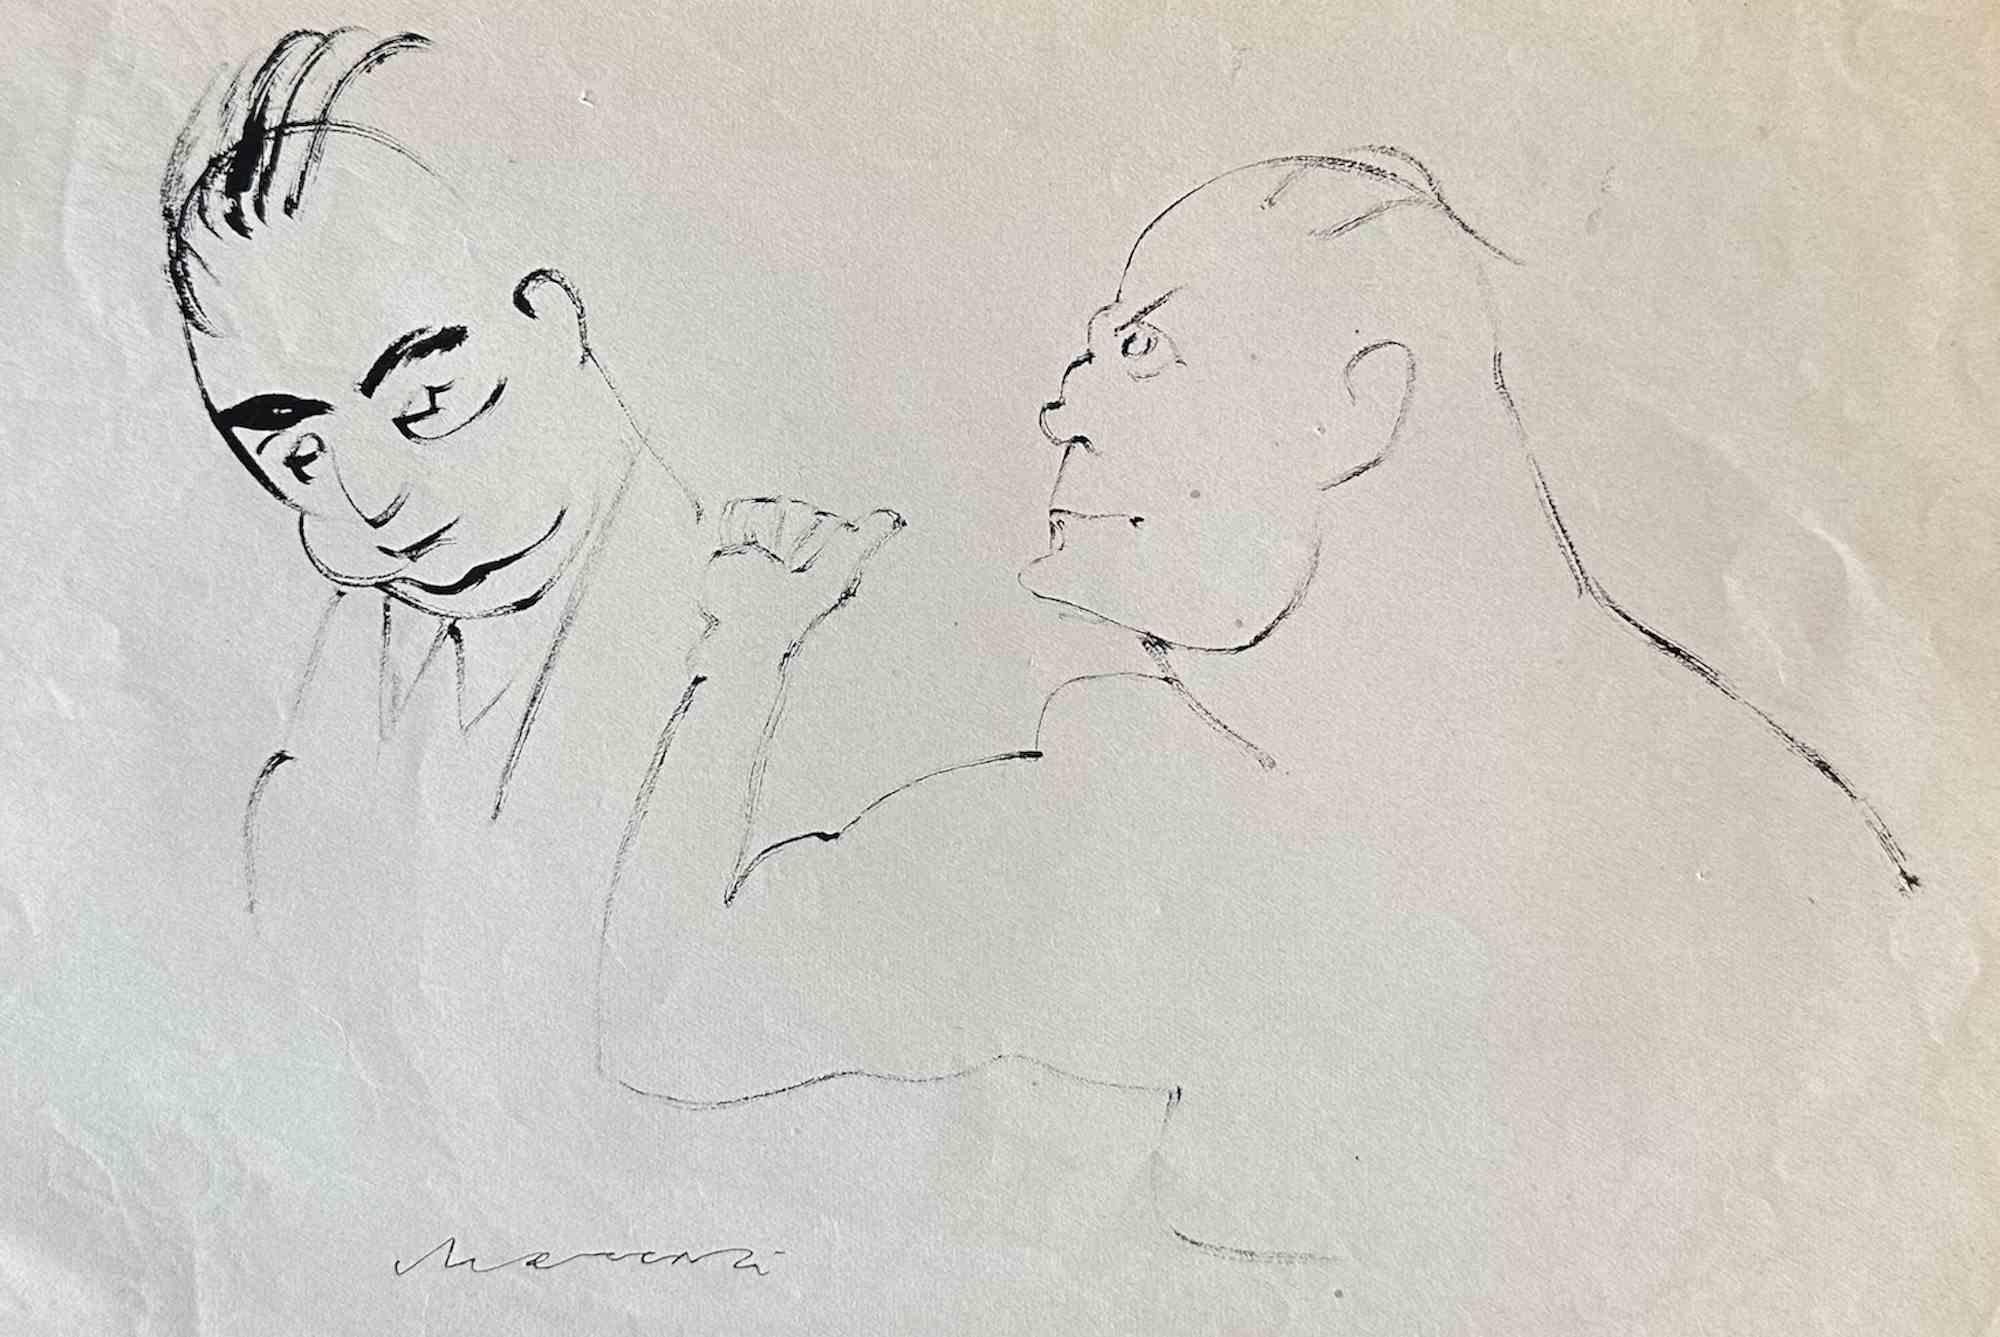 The Rage ist eine von Mino Maccari realisierte Federzeichnung  (1924-1989) in den 1960er Jahren.

Handsigniert am unteren Rand.

Guter Zustand.

Mino Maccari (Siena, 1924-Rom, 16. Juni 1989) war ein italienischer Schriftsteller, Maler, Graveur und